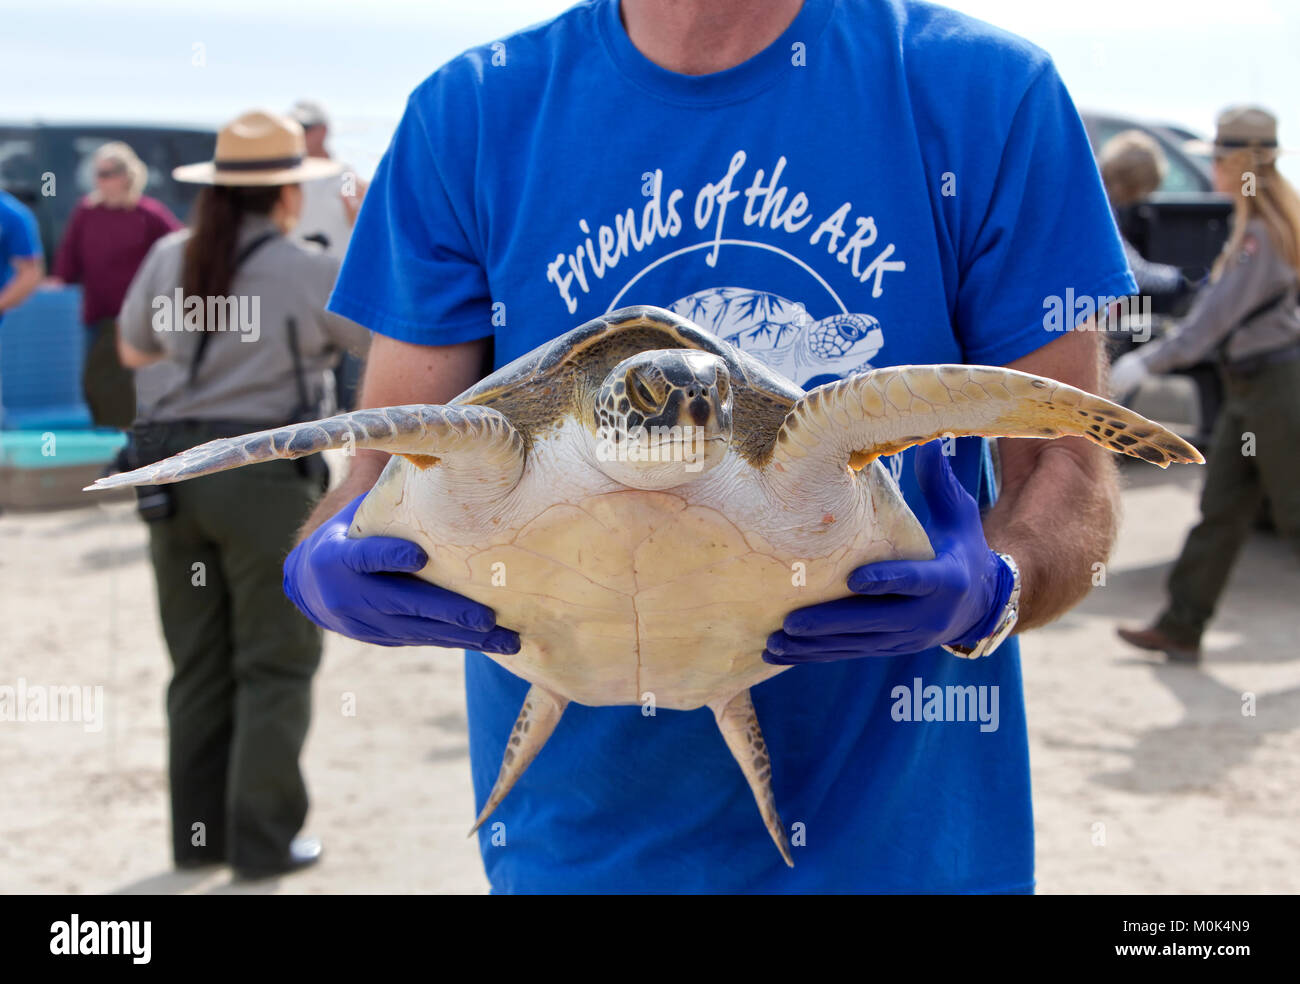 Maschio adulto volontario che trasportano & mostra riabilitato Kemp's Ridley Sea Turtle 'Lepidochelys kempii' per il pubblico che frequentano il rilascio. Foto Stock